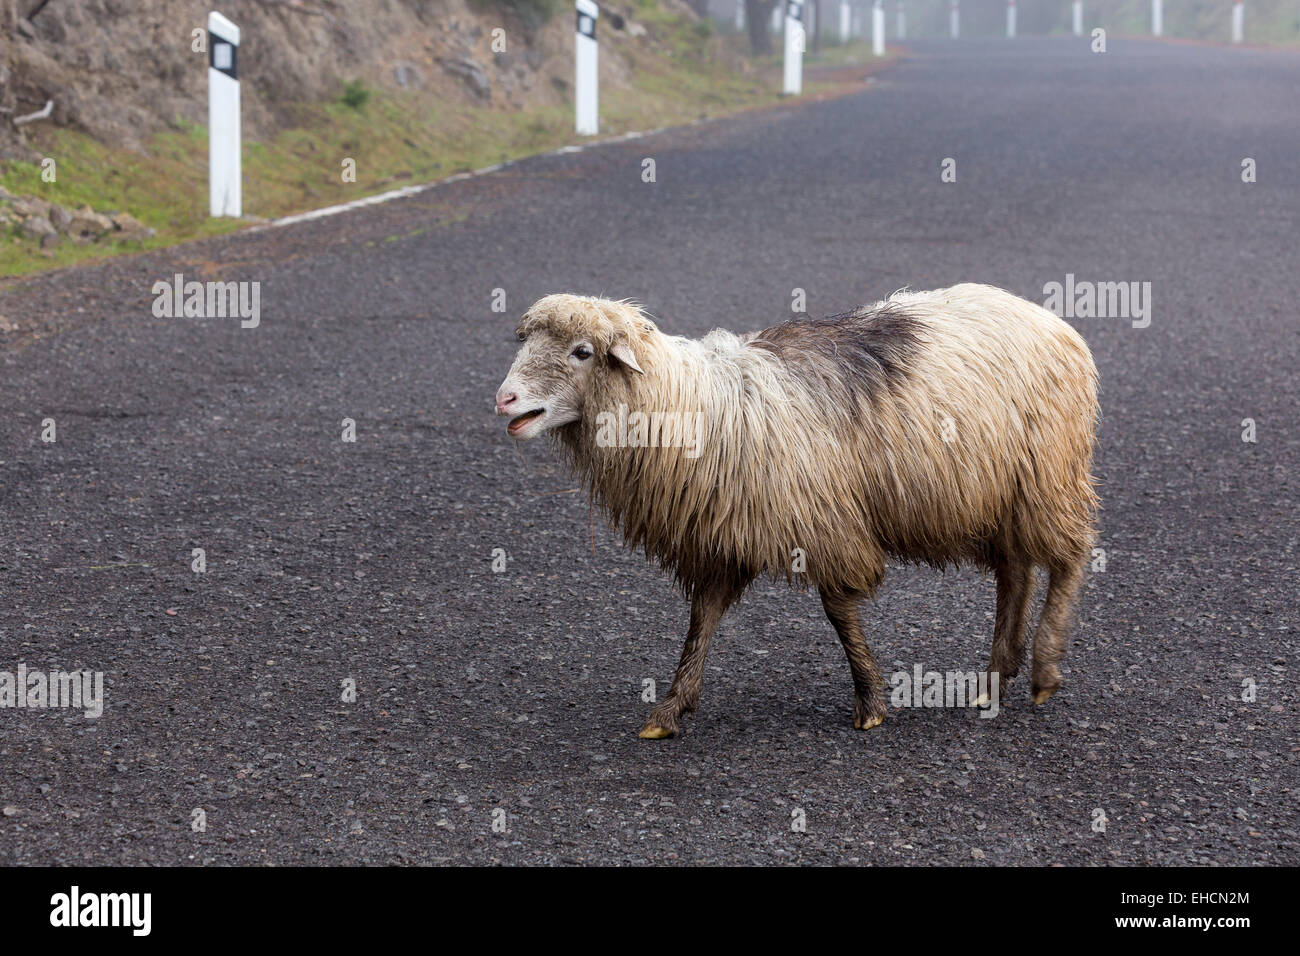 Ovejas cruzar una carretera, Gran Canaria, Islas Canarias, España Foto de stock